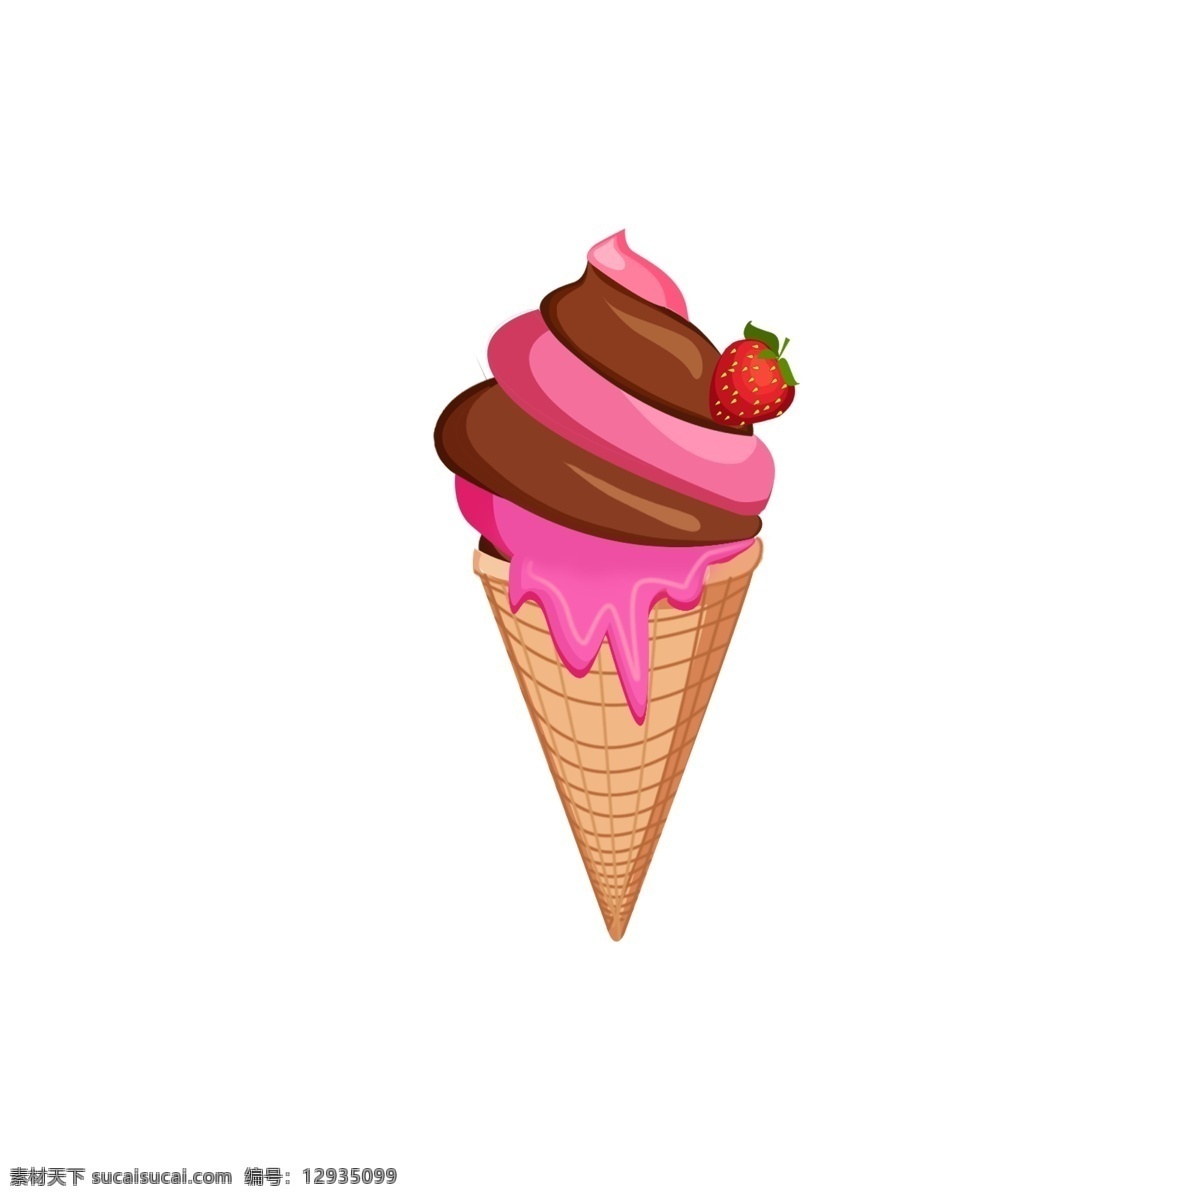 卡通 手绘 多种 口味 冰淇凌 巧克力冰淇凌 甜美 夏天 冰凉 清爽